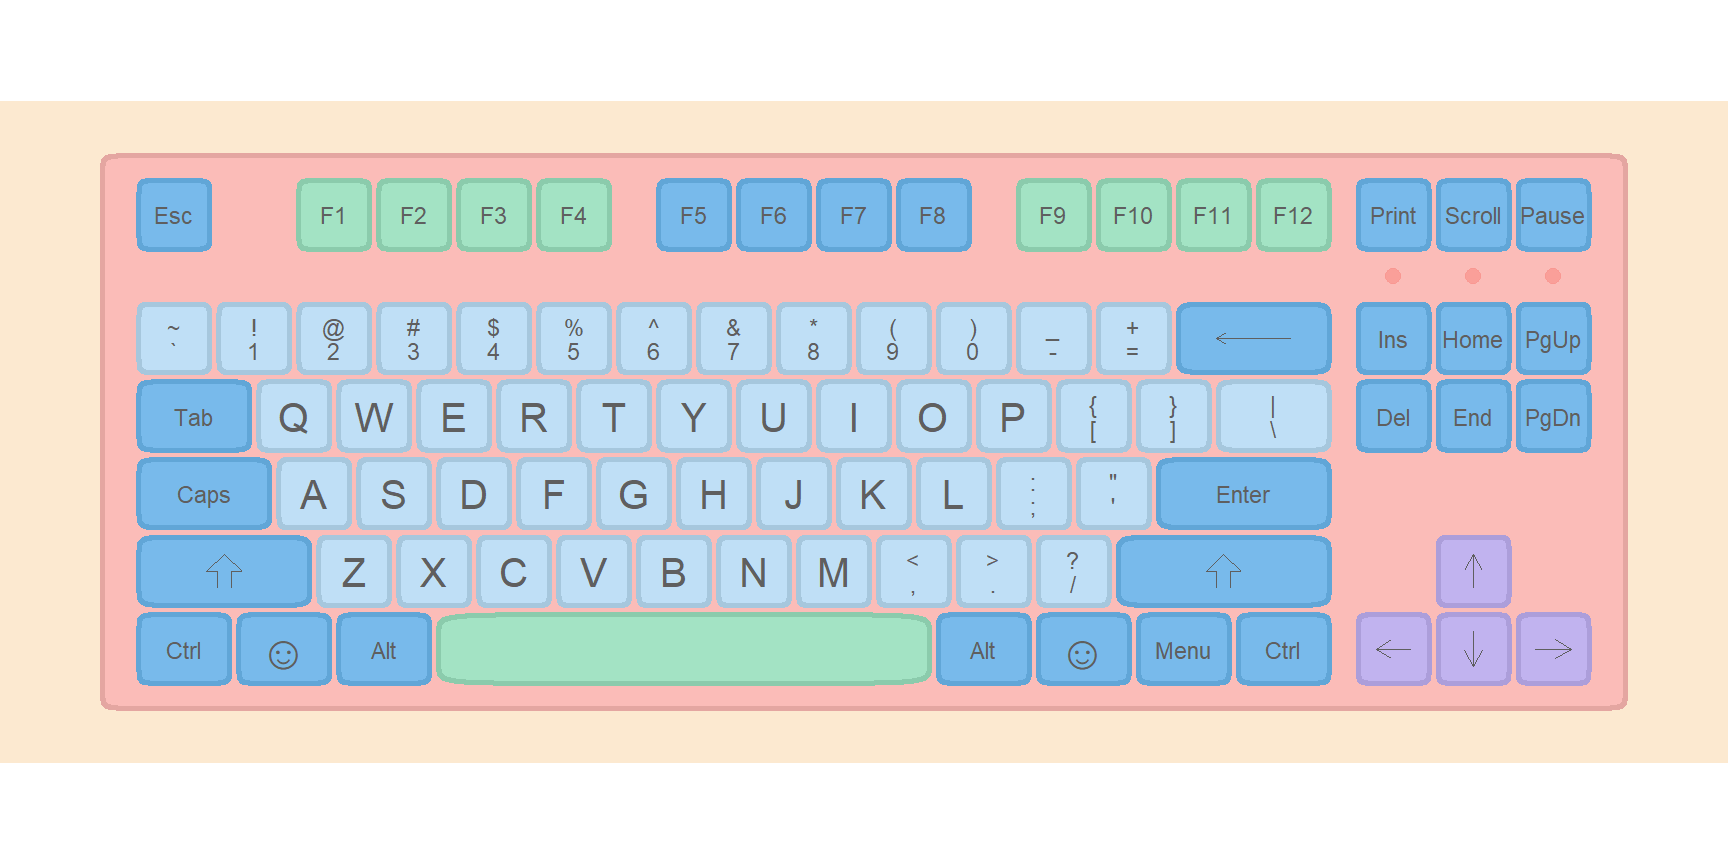 Draw a basic keyboard in R ggplot2